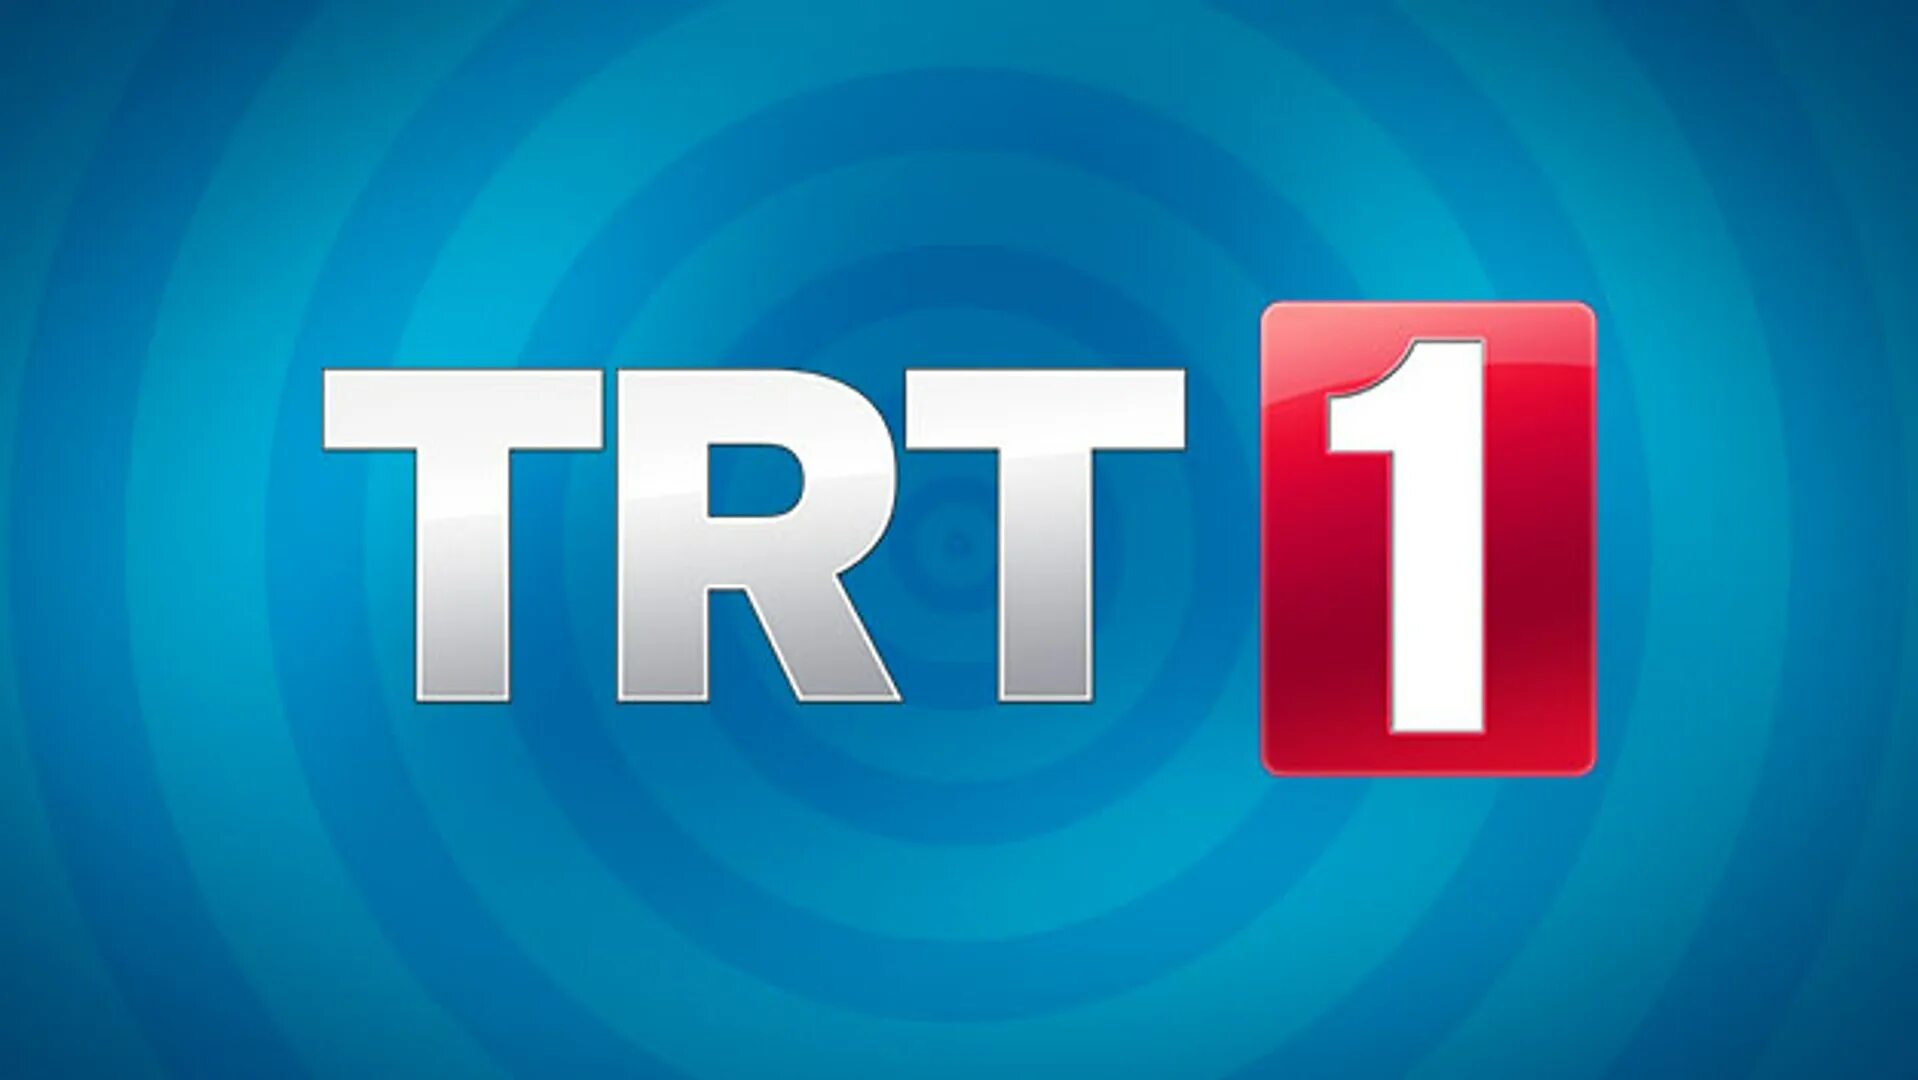 Trt canlı yayın. TRT. TRT 1. Телеканал TRT. TRT турецкий канал.